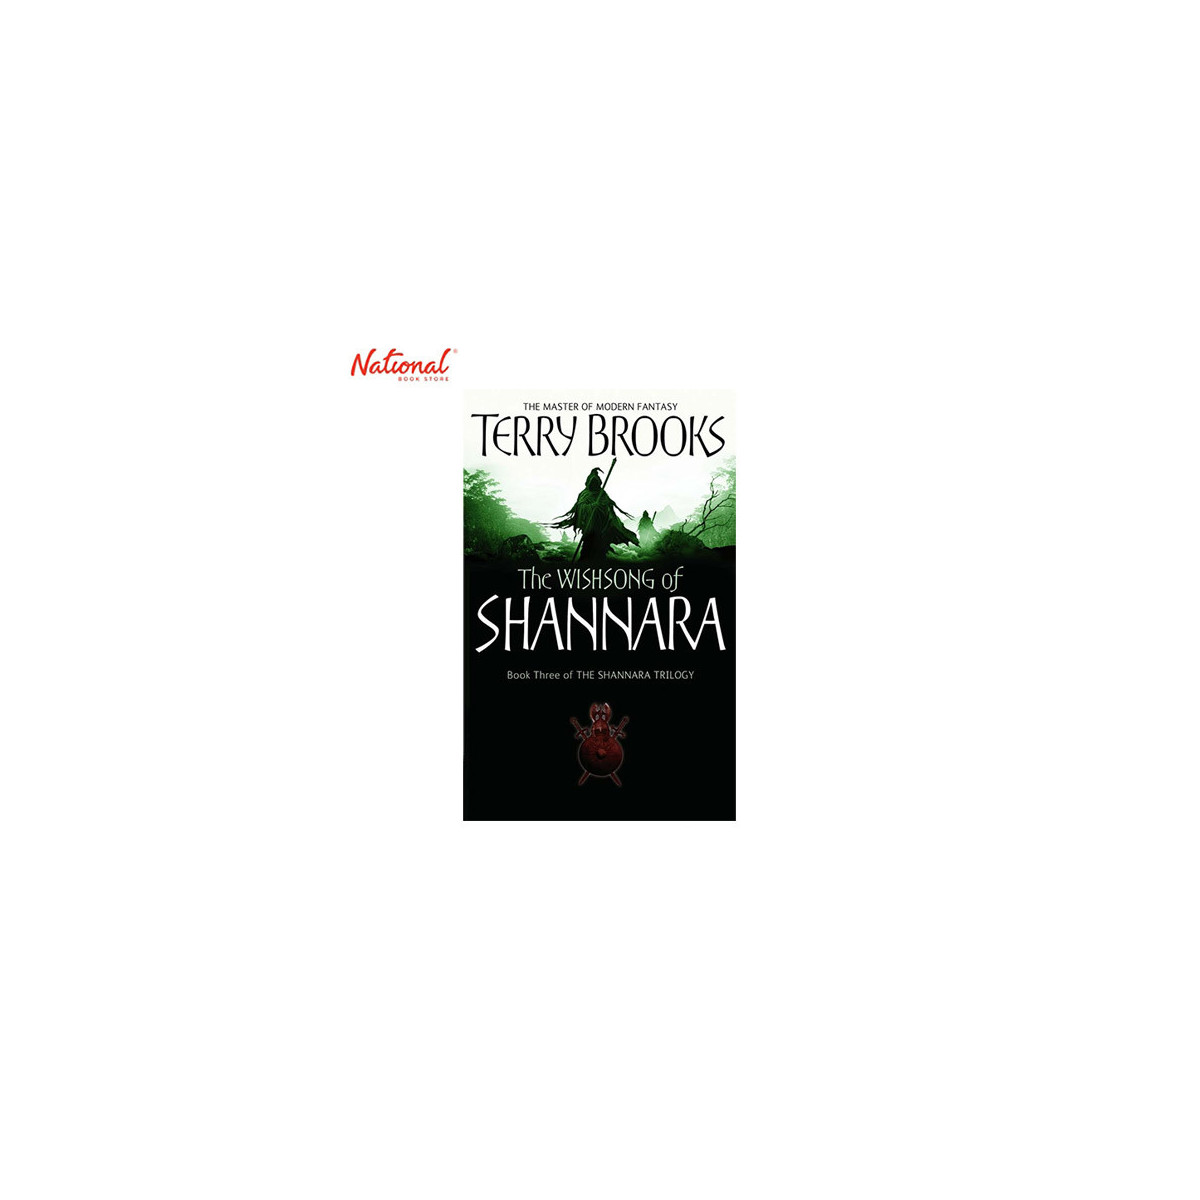 WISHSONG OF SHANNARA, BOOK 3